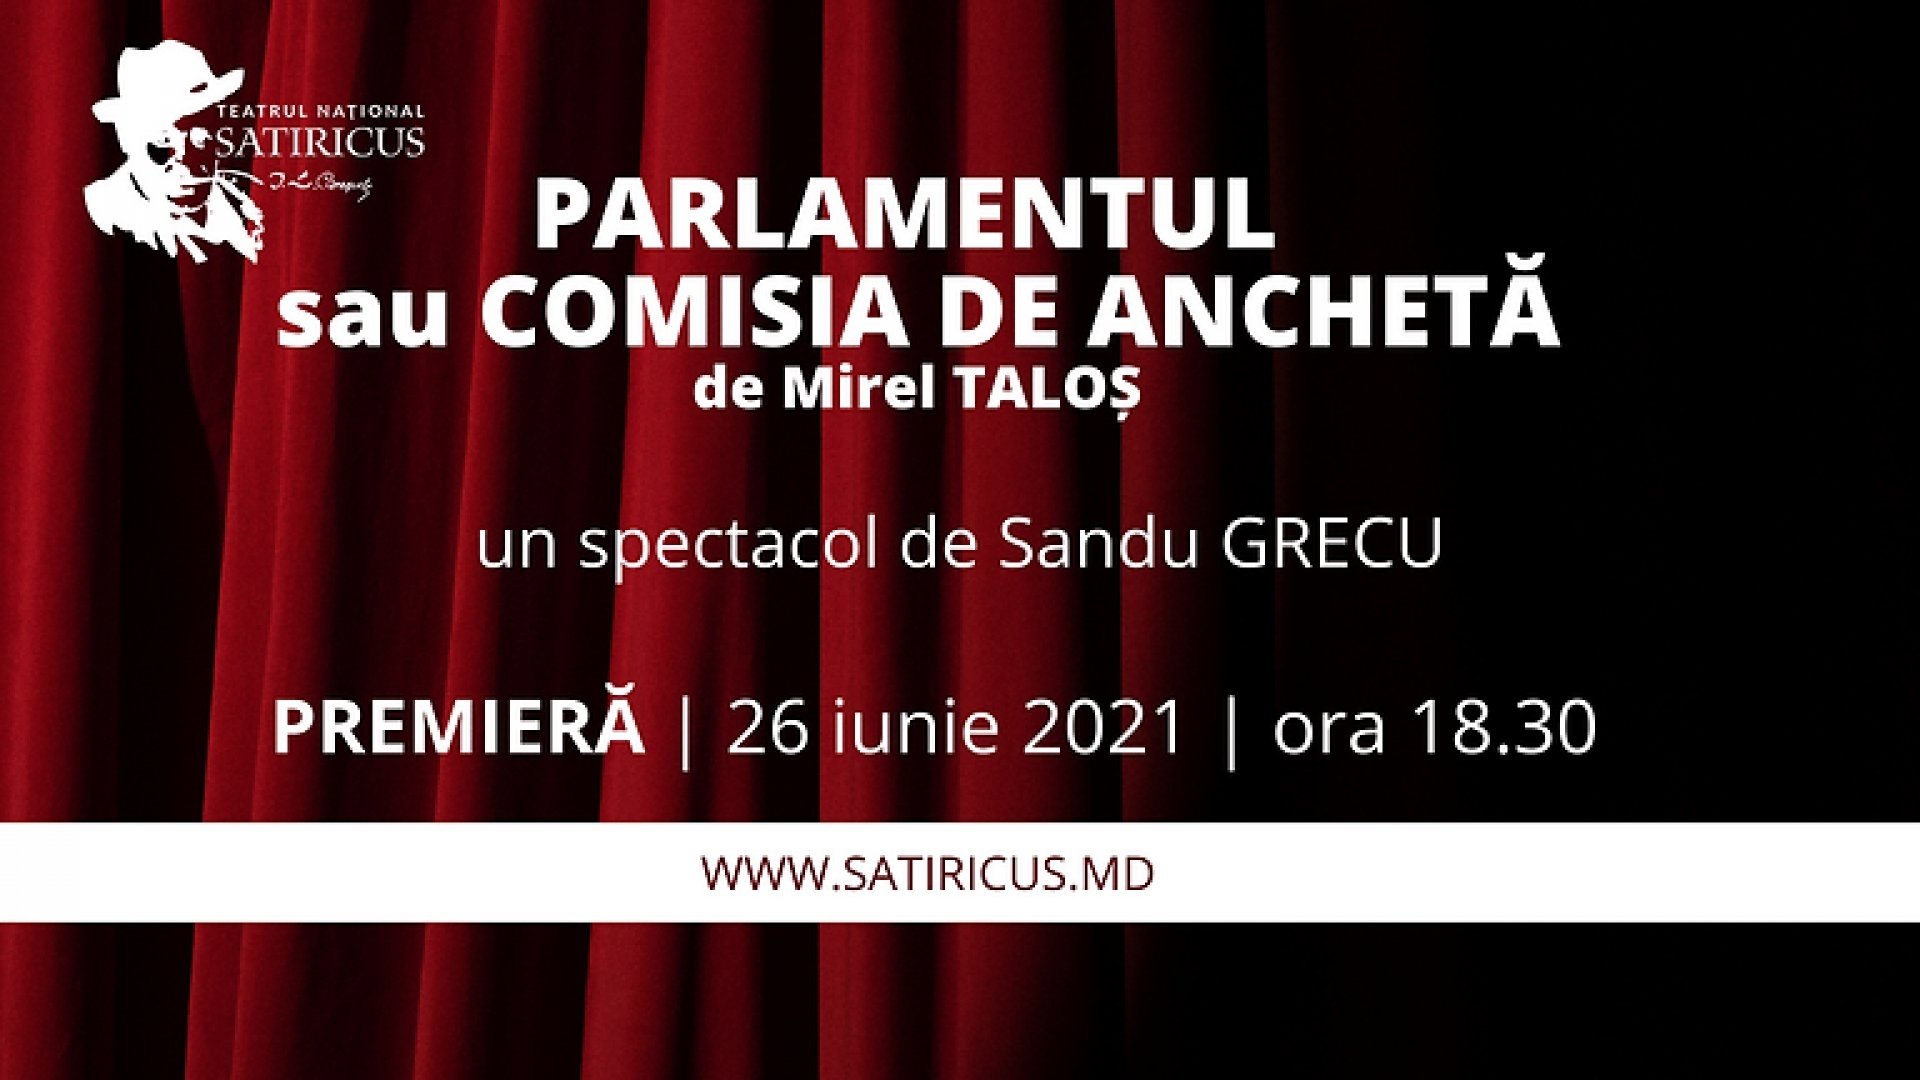 Parlamentul sau comisia de anchetă de Mirel TALOS